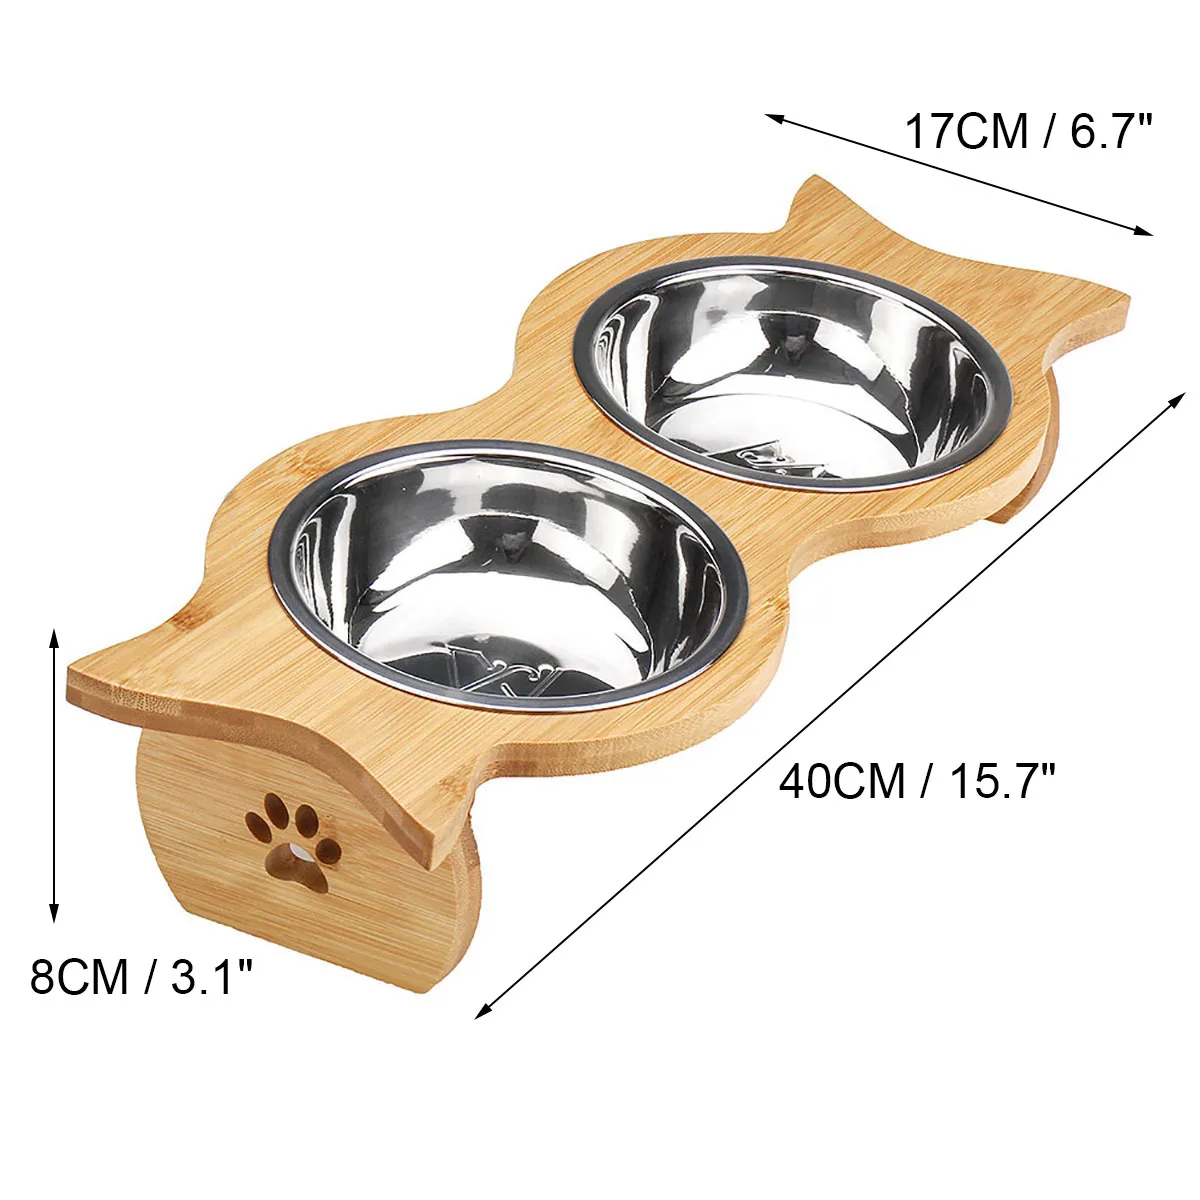 Для питомца шеи здоровья домашних животных Кормушка миски собака кошка подача воды пищи двойная миска бамбуковая противоскользящая керамическая/нержавеющая сталь посуда